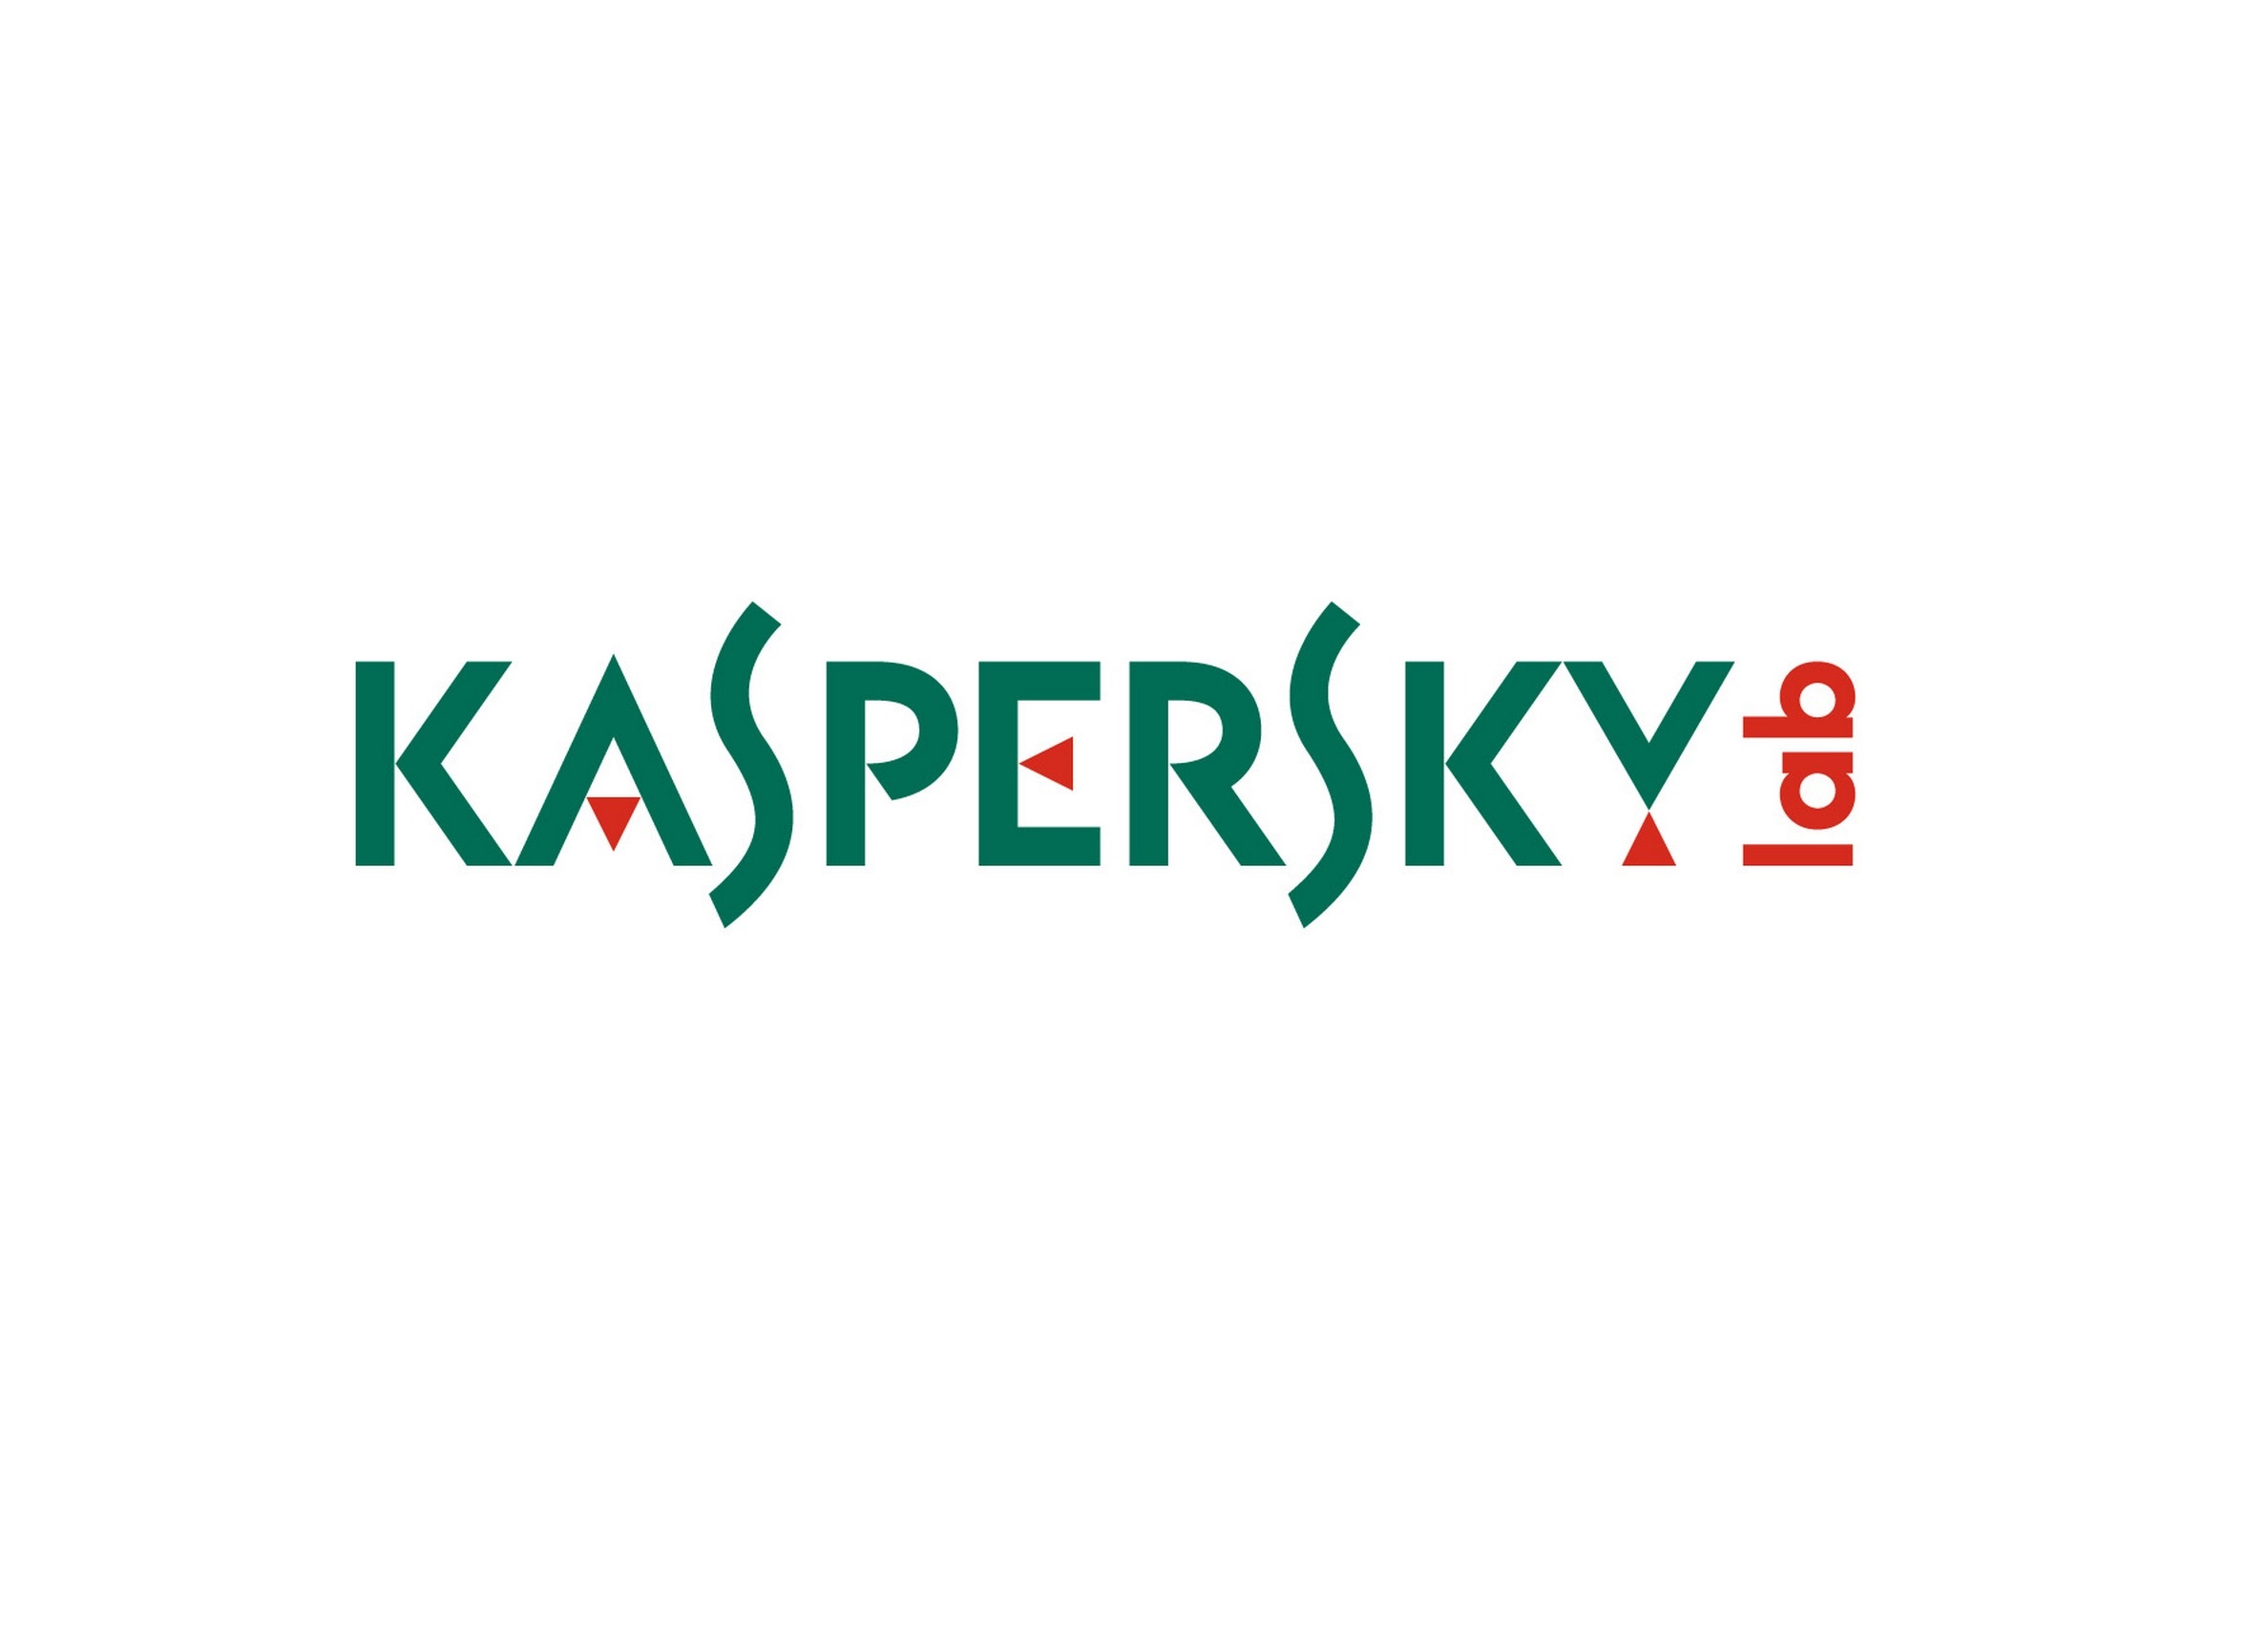 kaspersky cloud free reddit